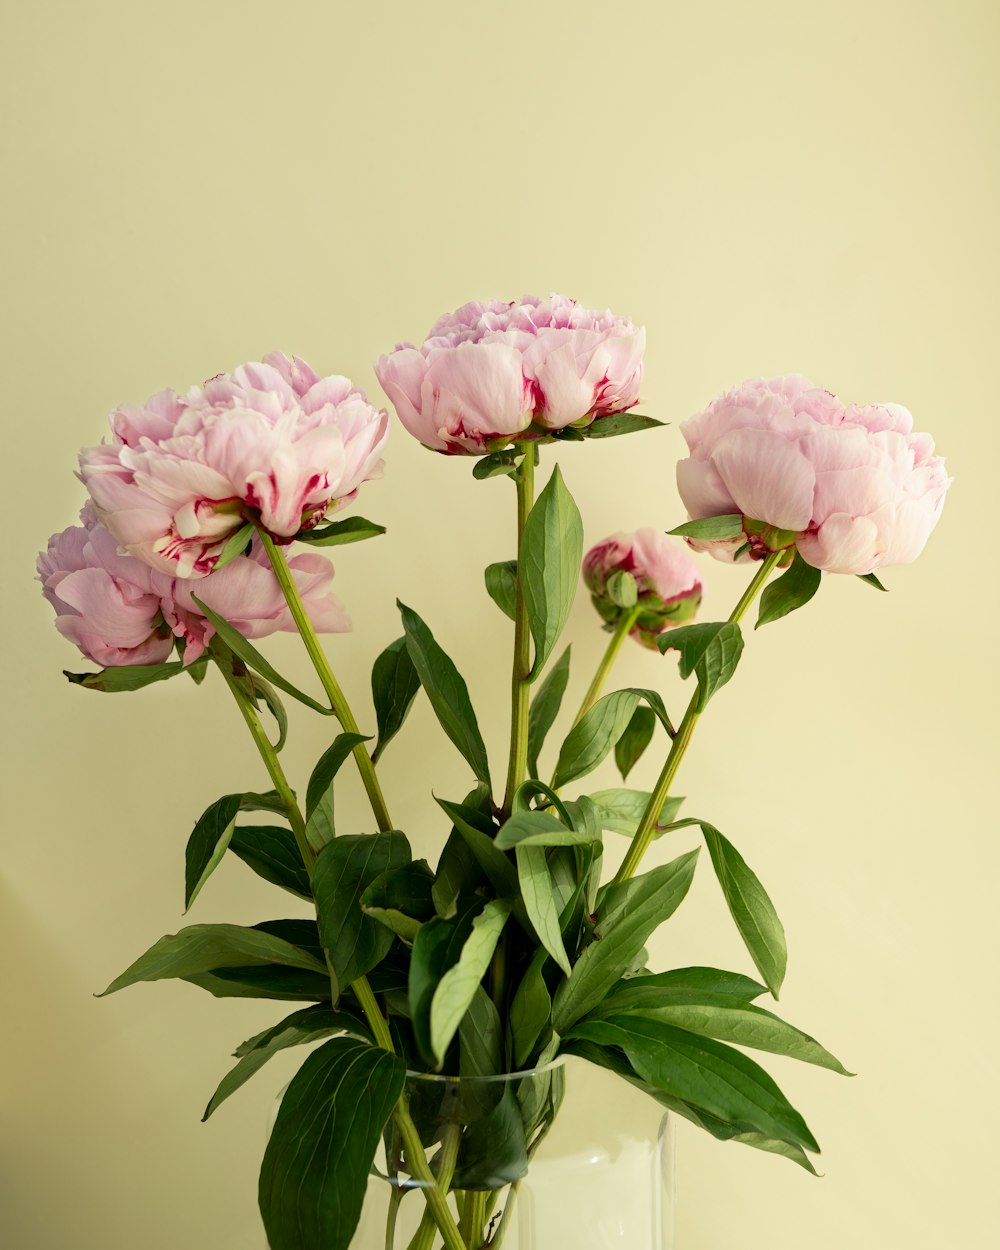 투명 유리 꽃병에 핑크 장미